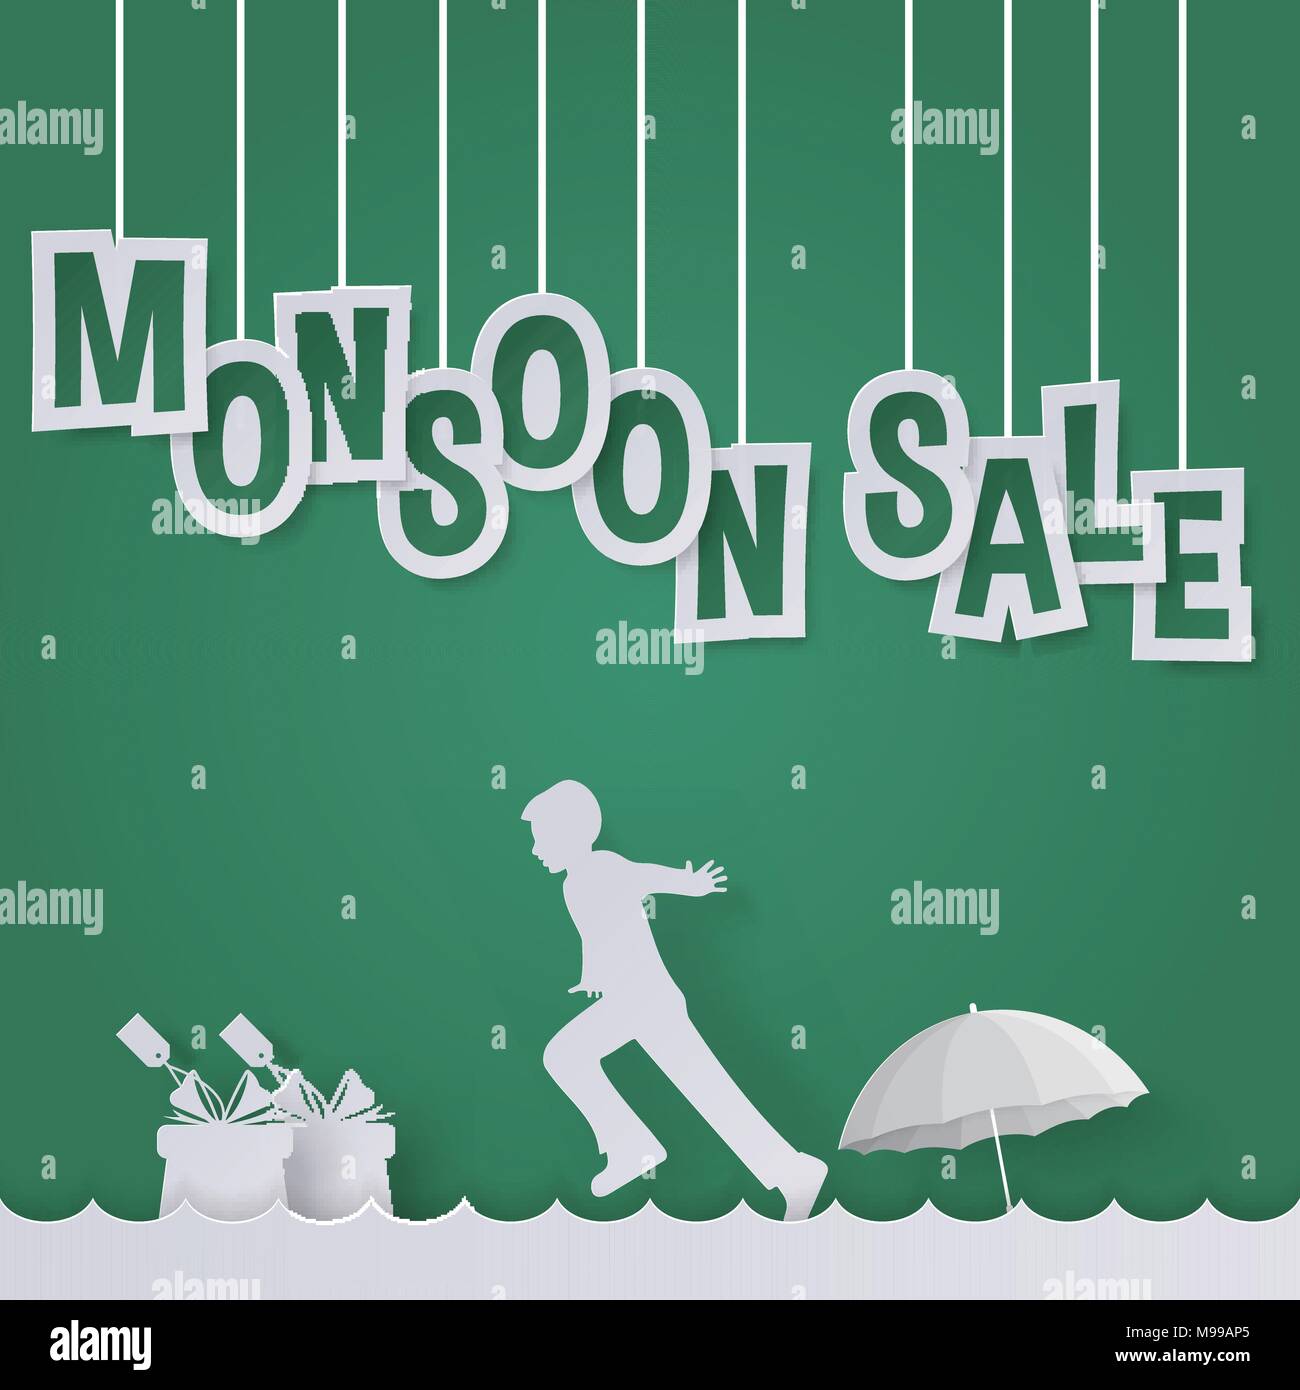 Monsun Verkauf oder Regenzeit Verkauf Angebot für Discount Promotion Werbung mit Kindern/Kid, Geschenk- und Regenschirm in Paper art Stil Stock Vektor